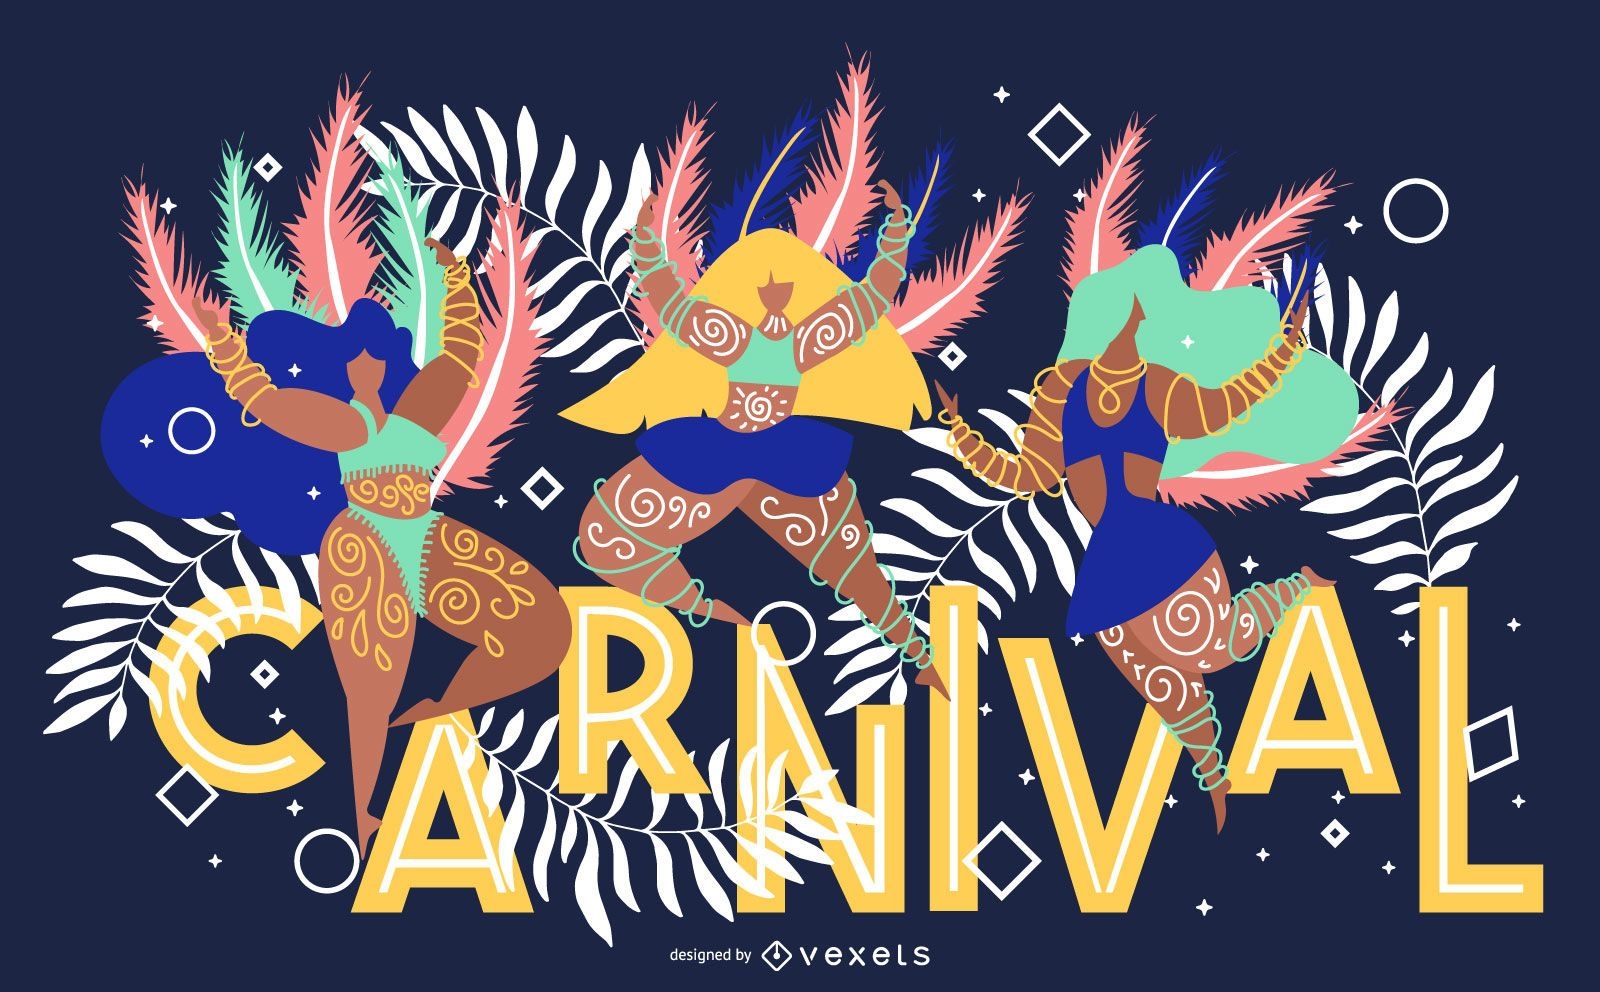 Diseño de banner artístico de carnaval